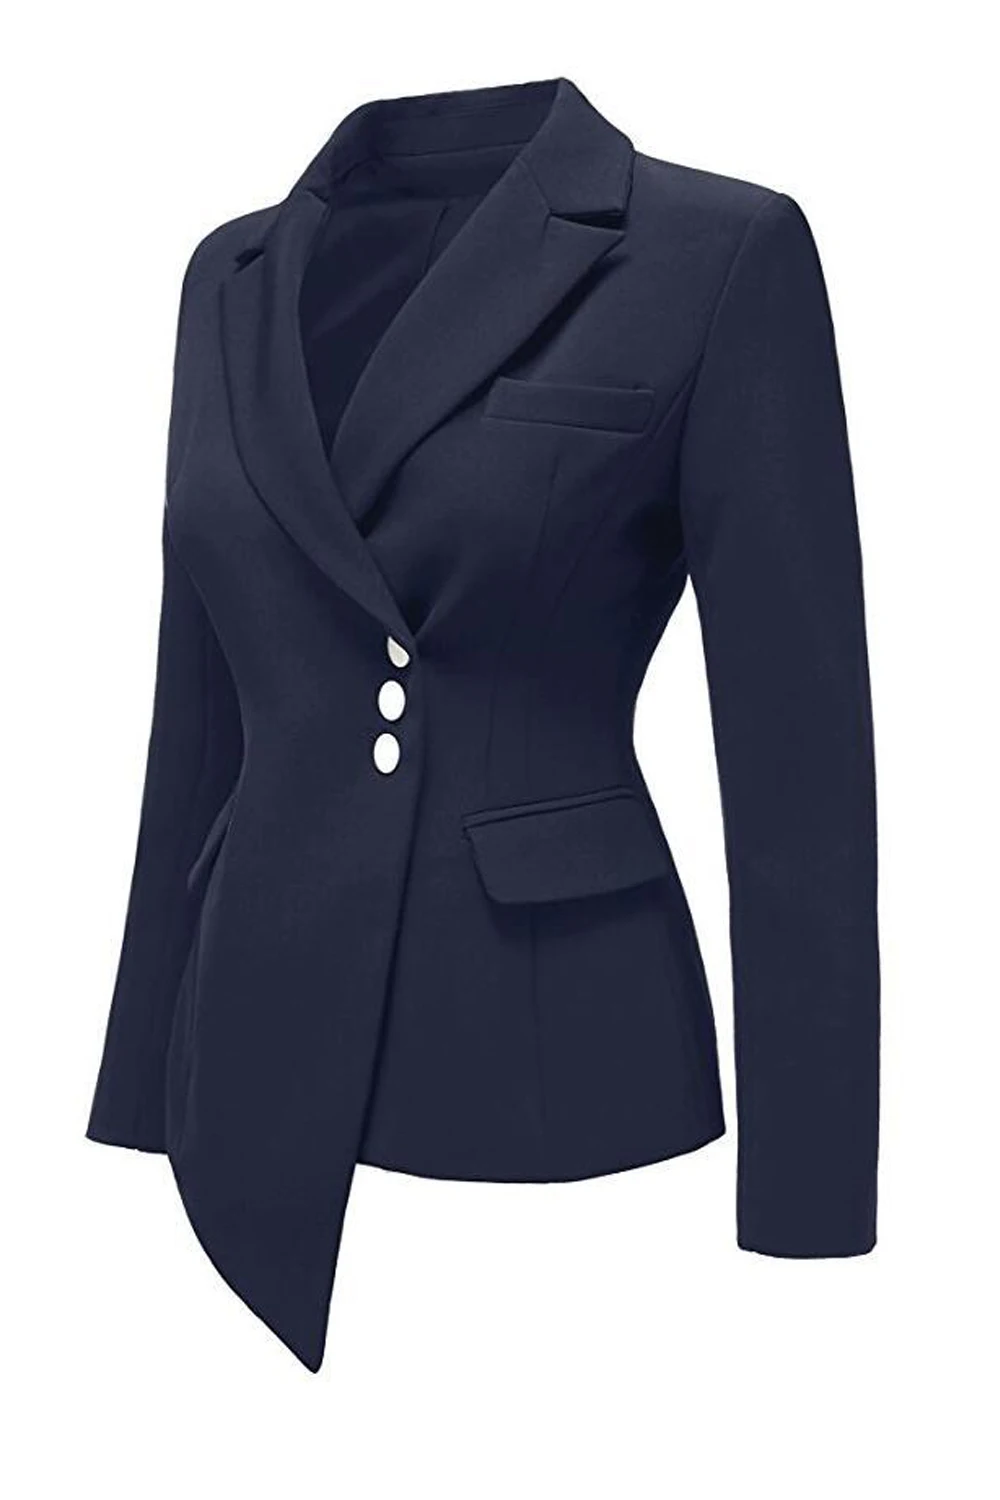 Элегантный Для женщин тонкий пиджак пальто с длинным рукавом Повседневная куртка Пиджаки Женский Бизнес костюм нерегулярные женская